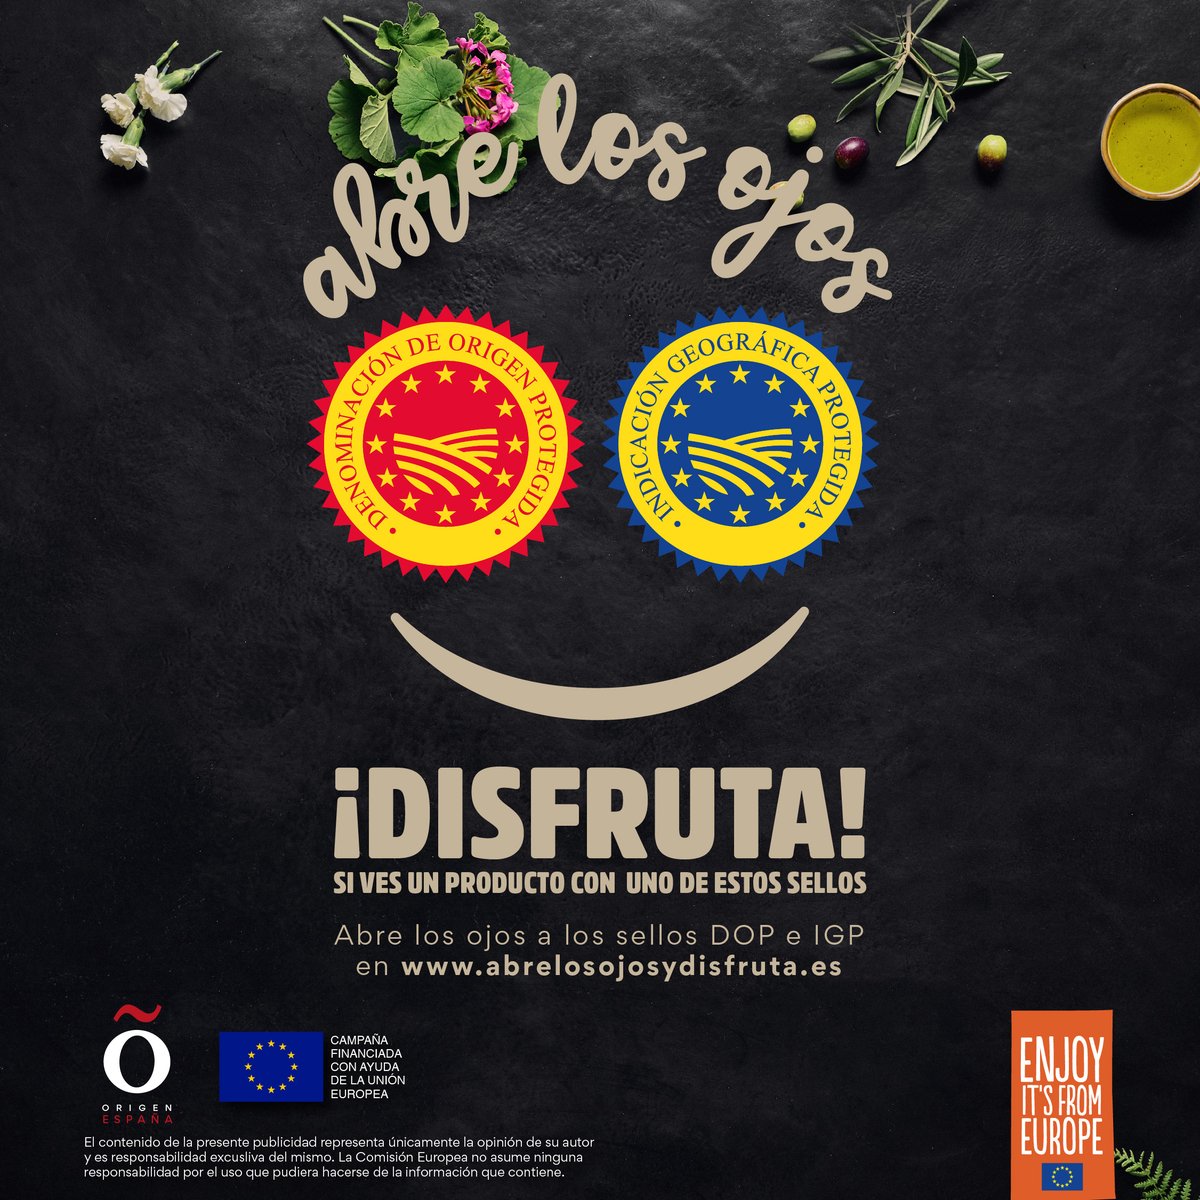 Ya está en medios online nuestra campaña @DisfrutaIGP_DOP para informar sobre los sellos europeos #IGPyDOP. ¿Queréis disfrutar? Entonces, abrid los ojos a las historias que nos tienen que contar muchos productos 
twitter.com/DisfrutaIGP_DO…
#calidad #origen #tradicion #garantía